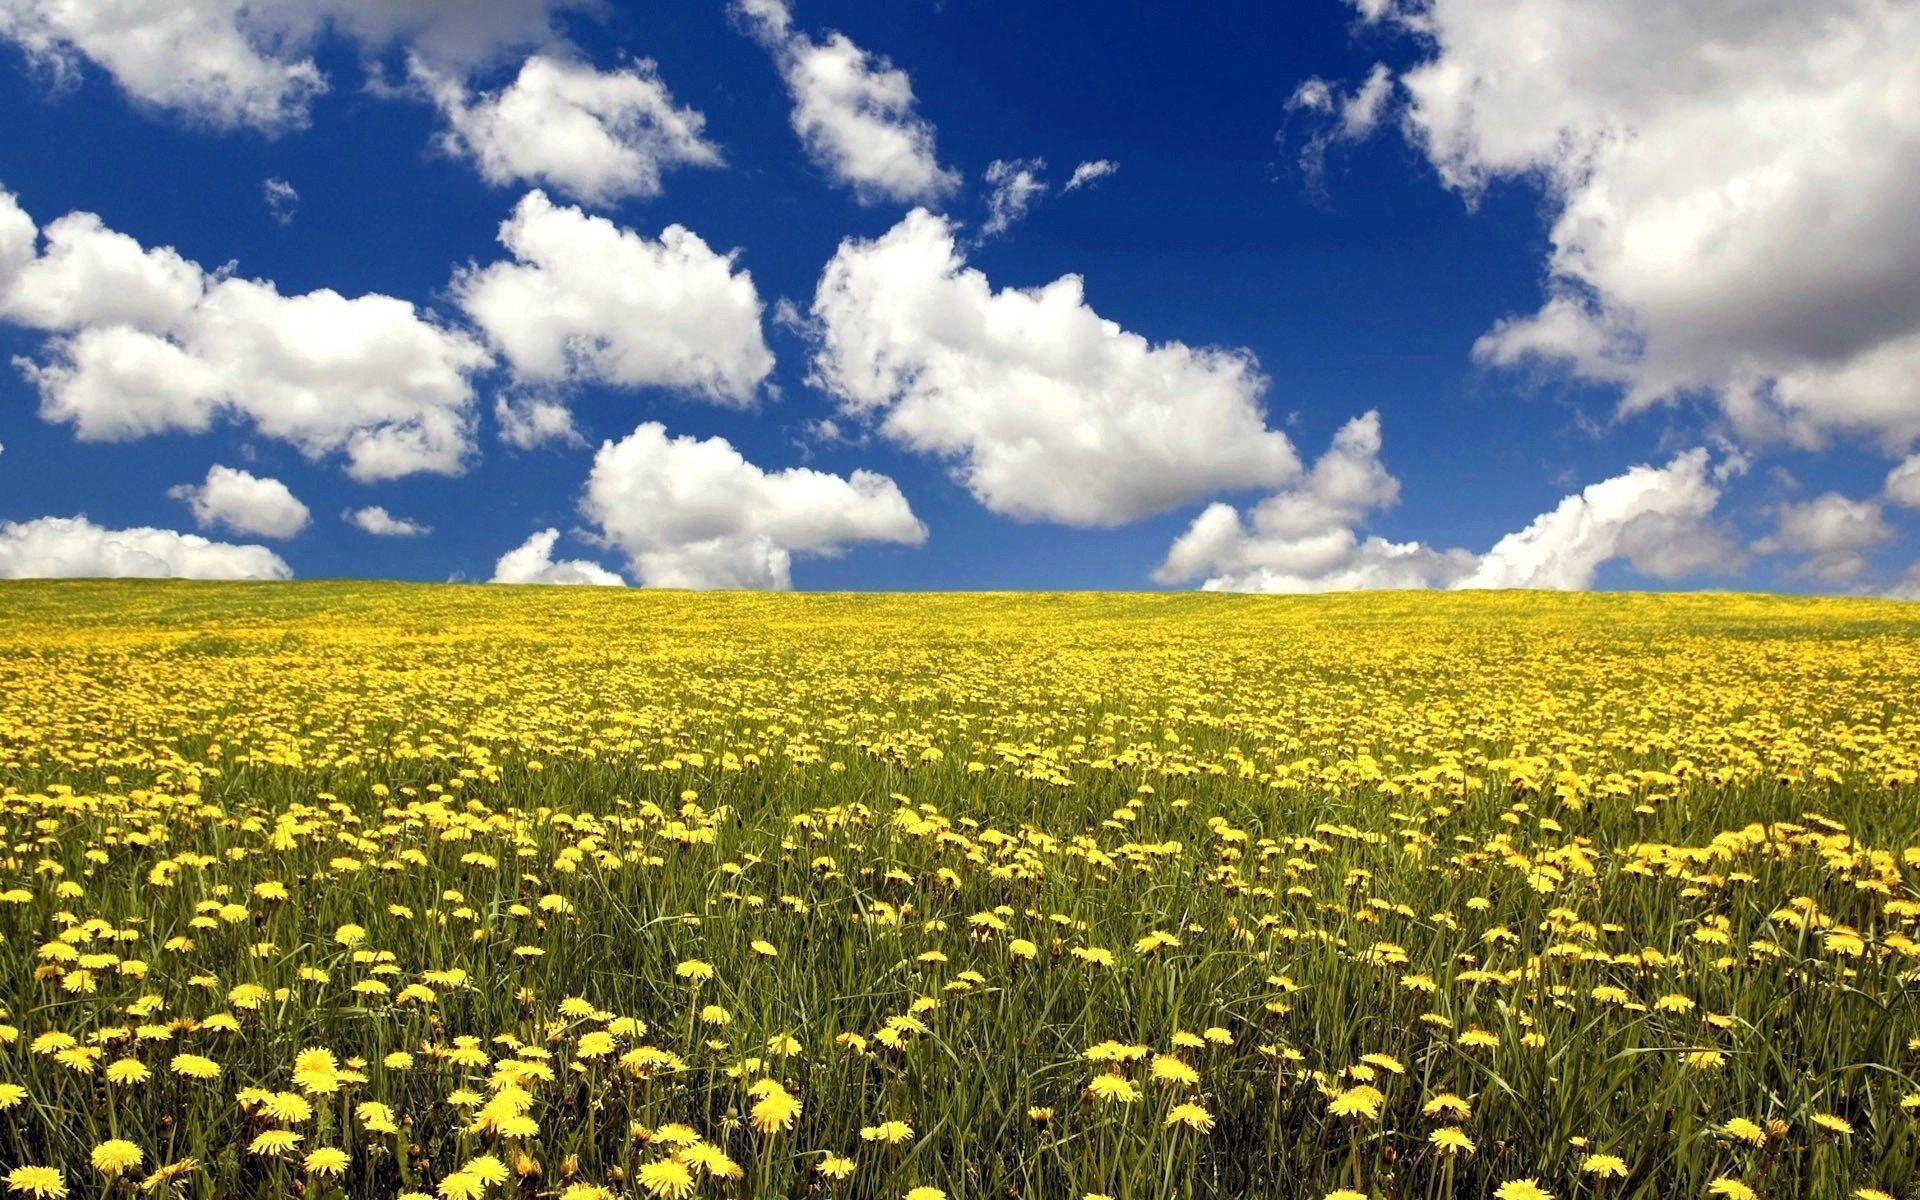 Summer flower field and blue sky Wallpaper Wallpaper 71925